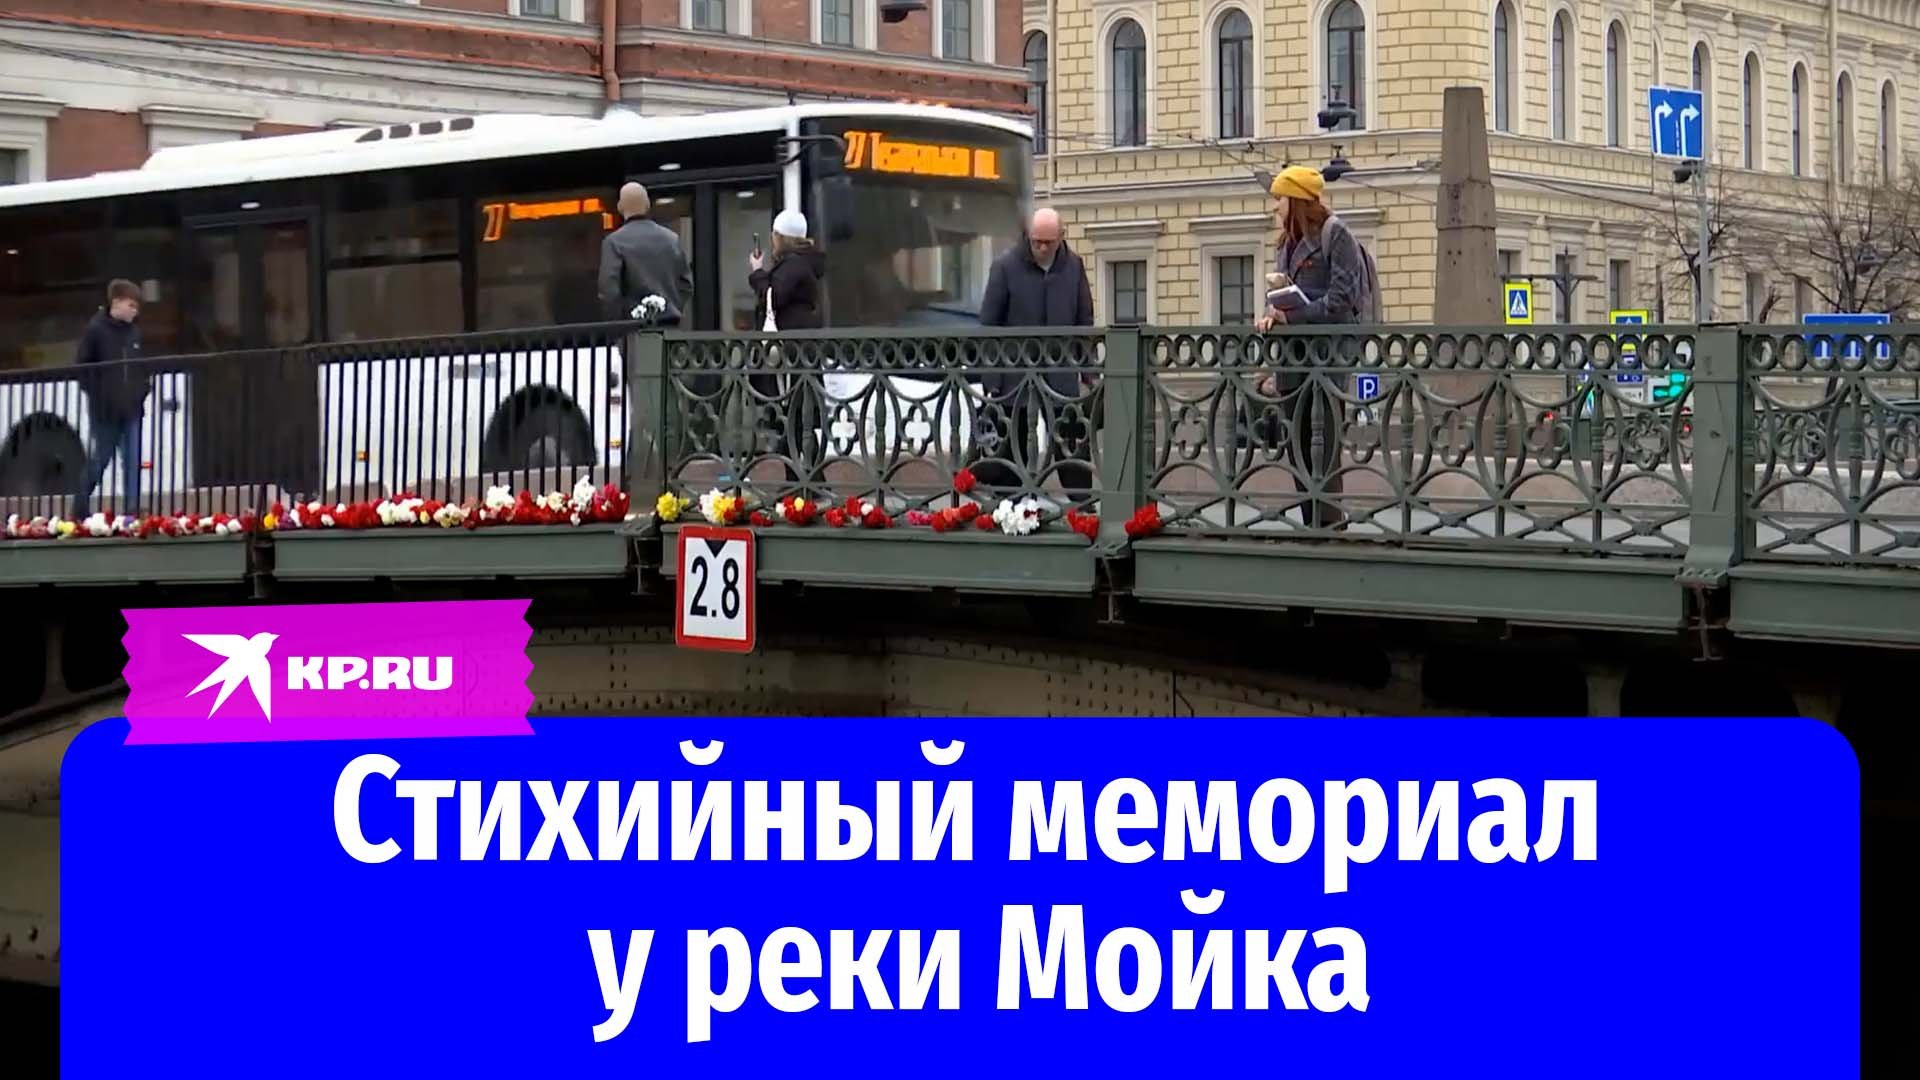 Петербуржцы несут цветы в память о погибших при падении автобуса в реку Мойку